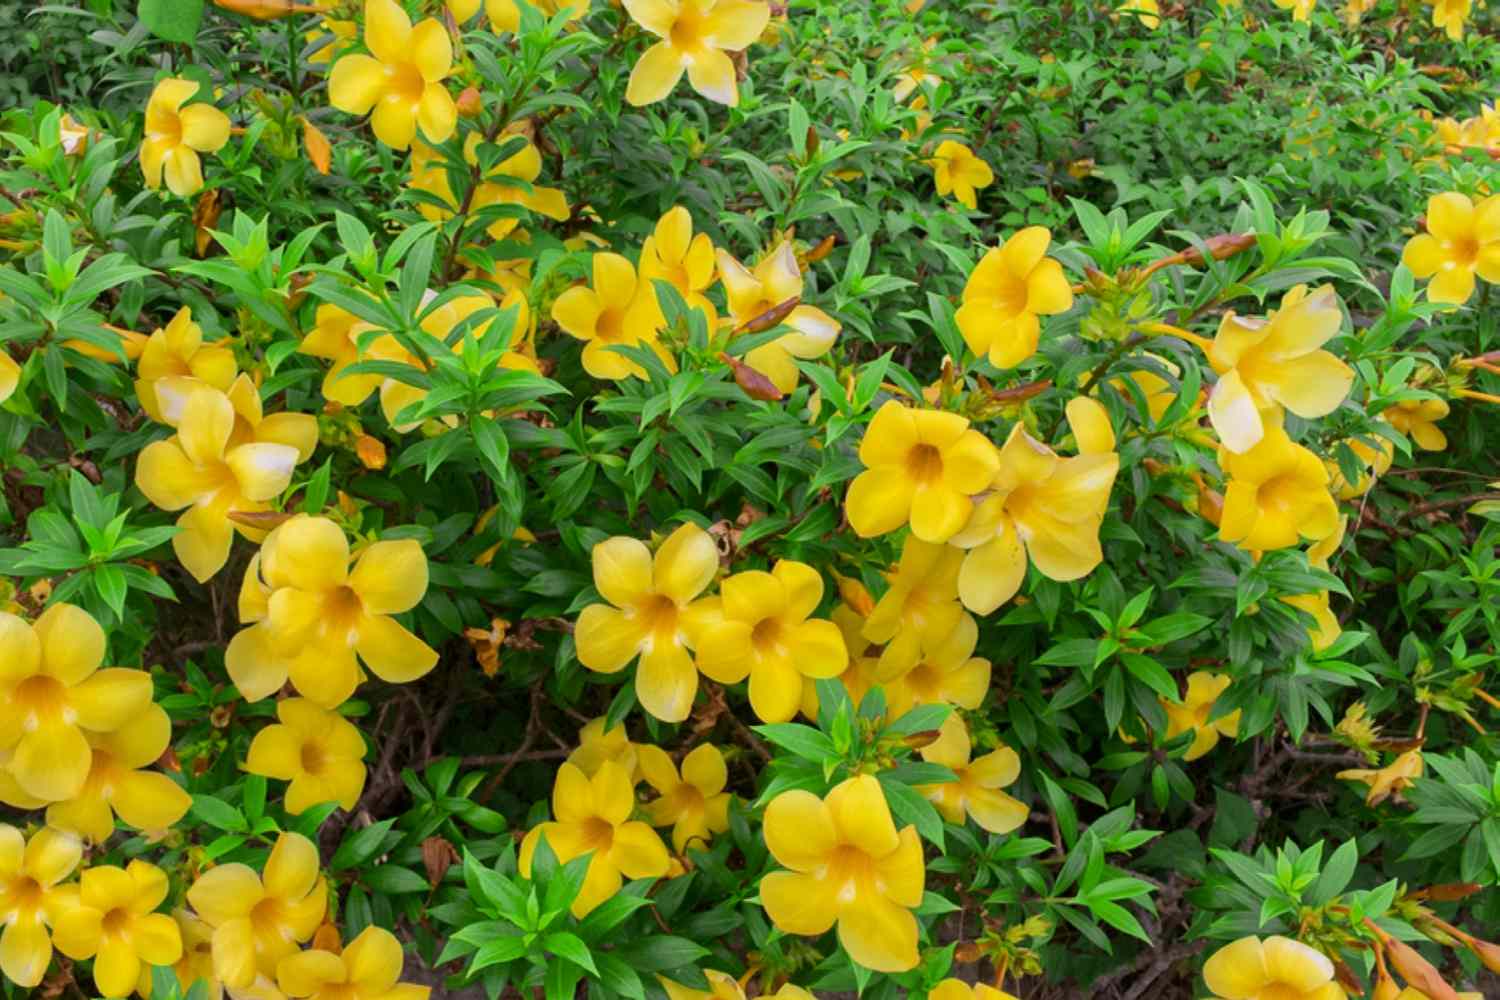 Allamanda arbusto trompeta con flores amarillas mantecosas rodeadas de hojas brillantes